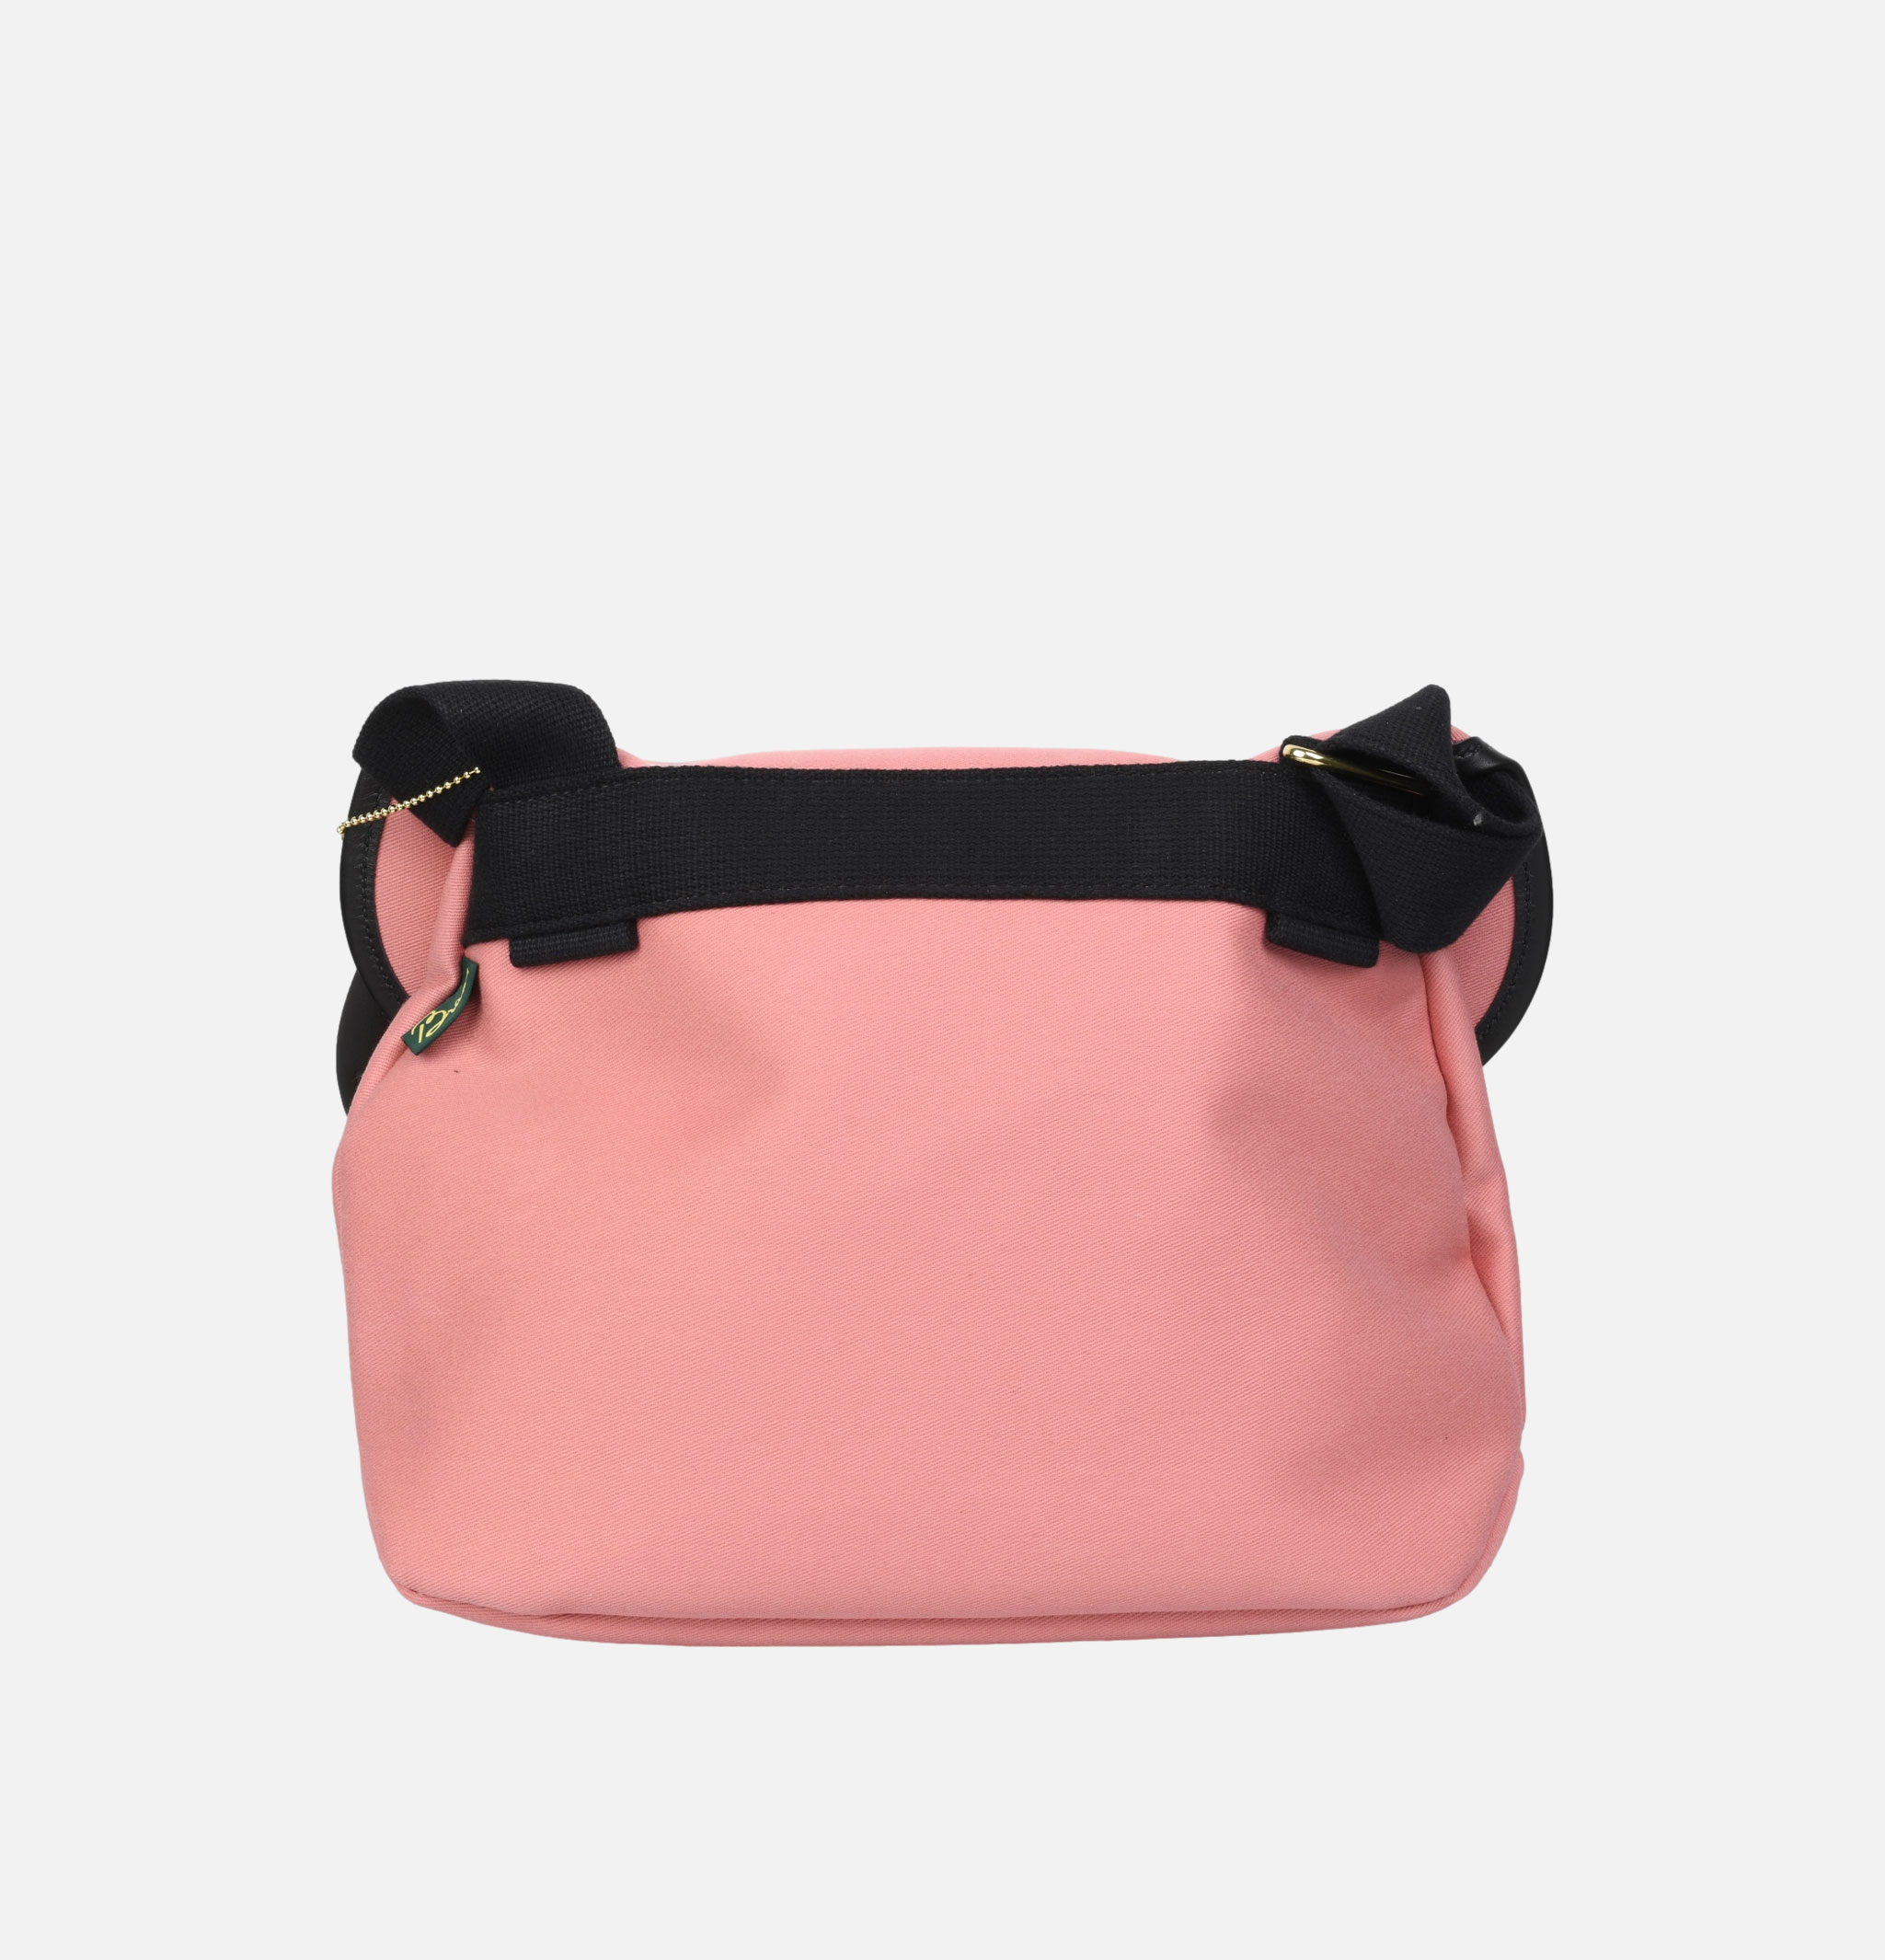 Brady Bag Avon Bag Pink